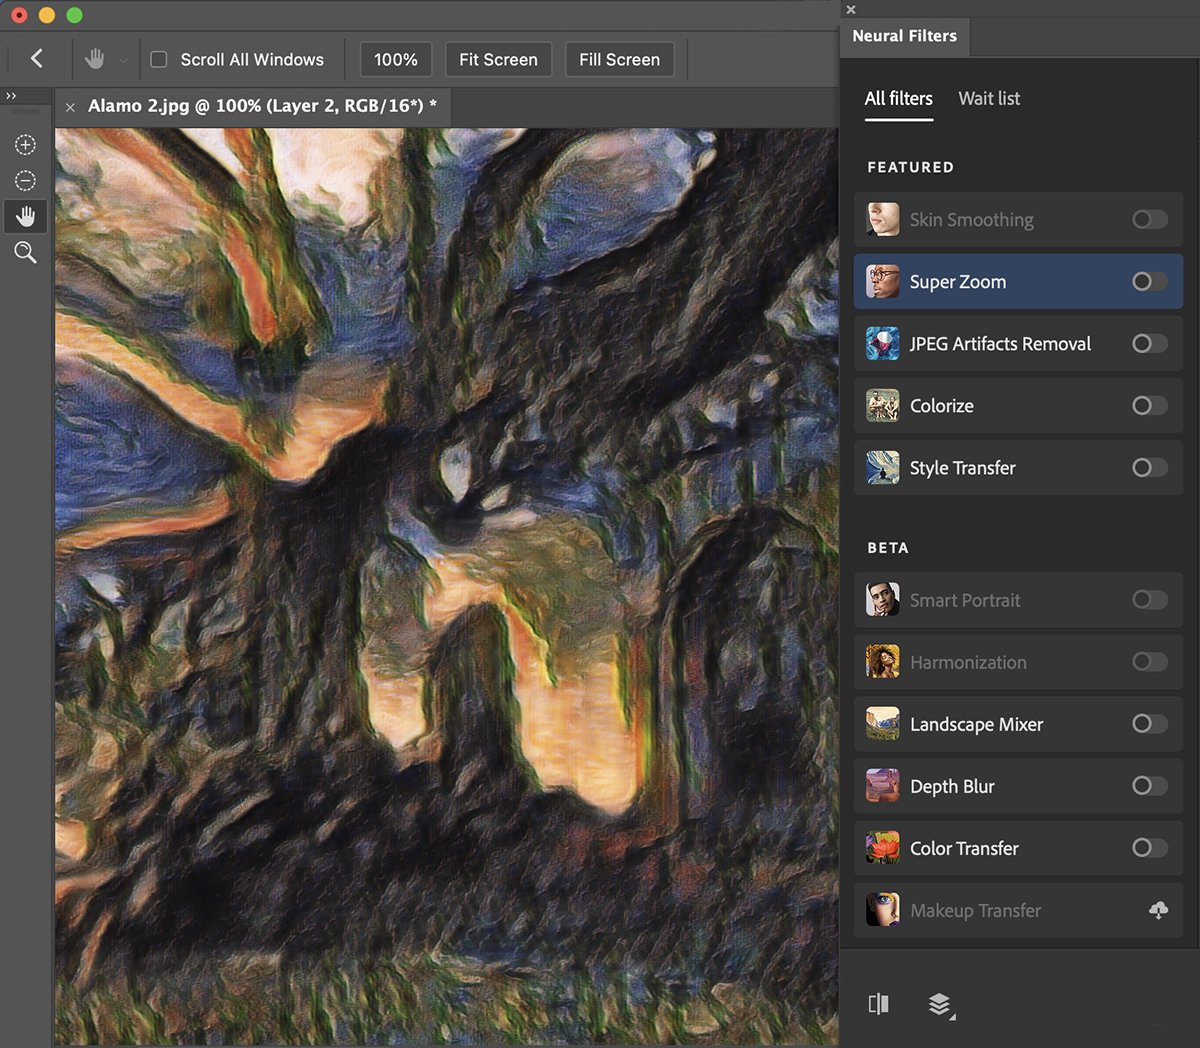 Скриншот панели нейрофильтров Photoshop, показывающий перенос стиля на изображение дерева